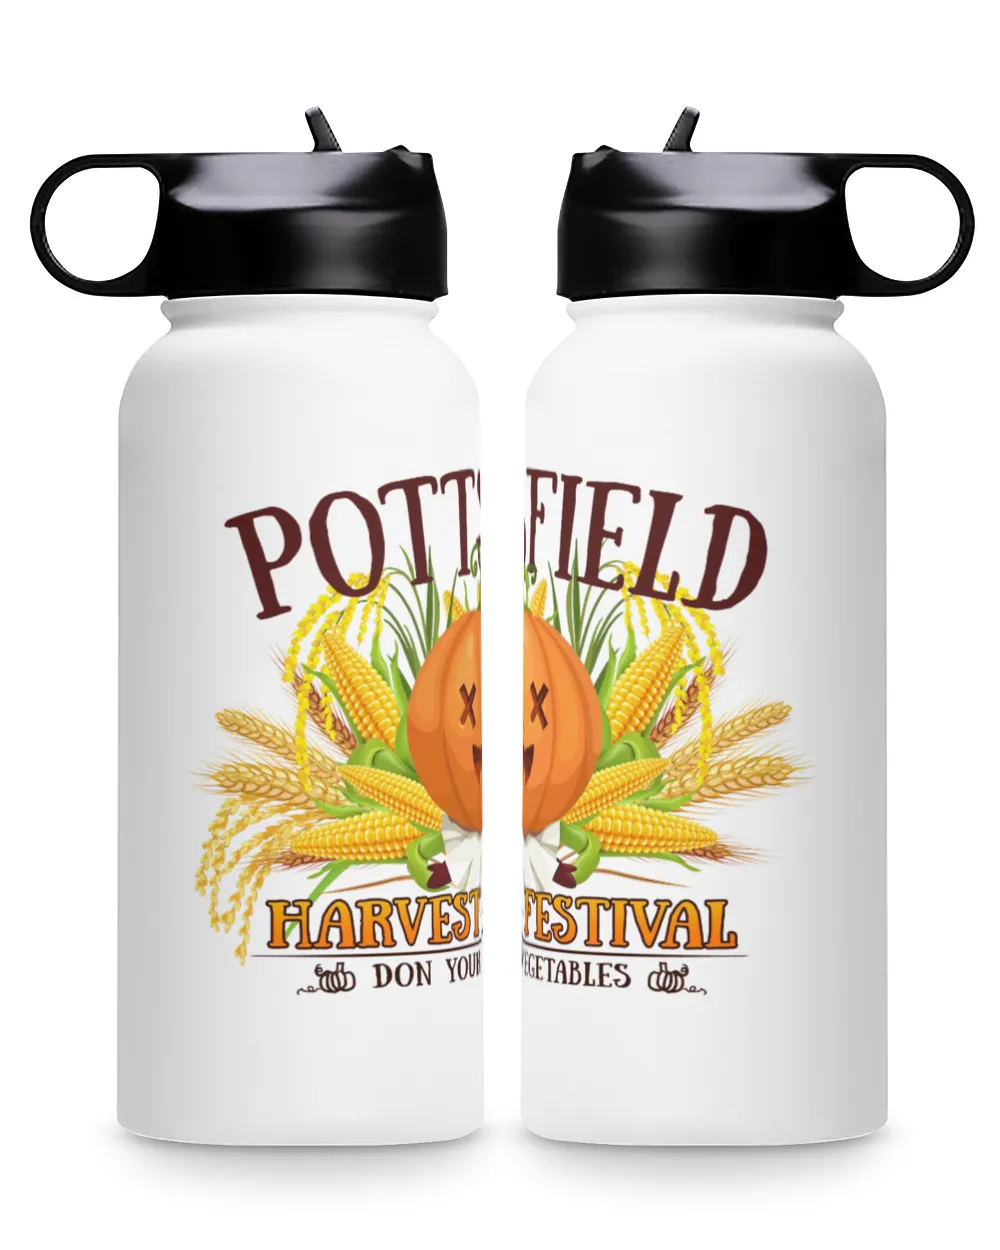 Pottsfield Harvest Festival Don Your Vegetables Premium Water Bottle